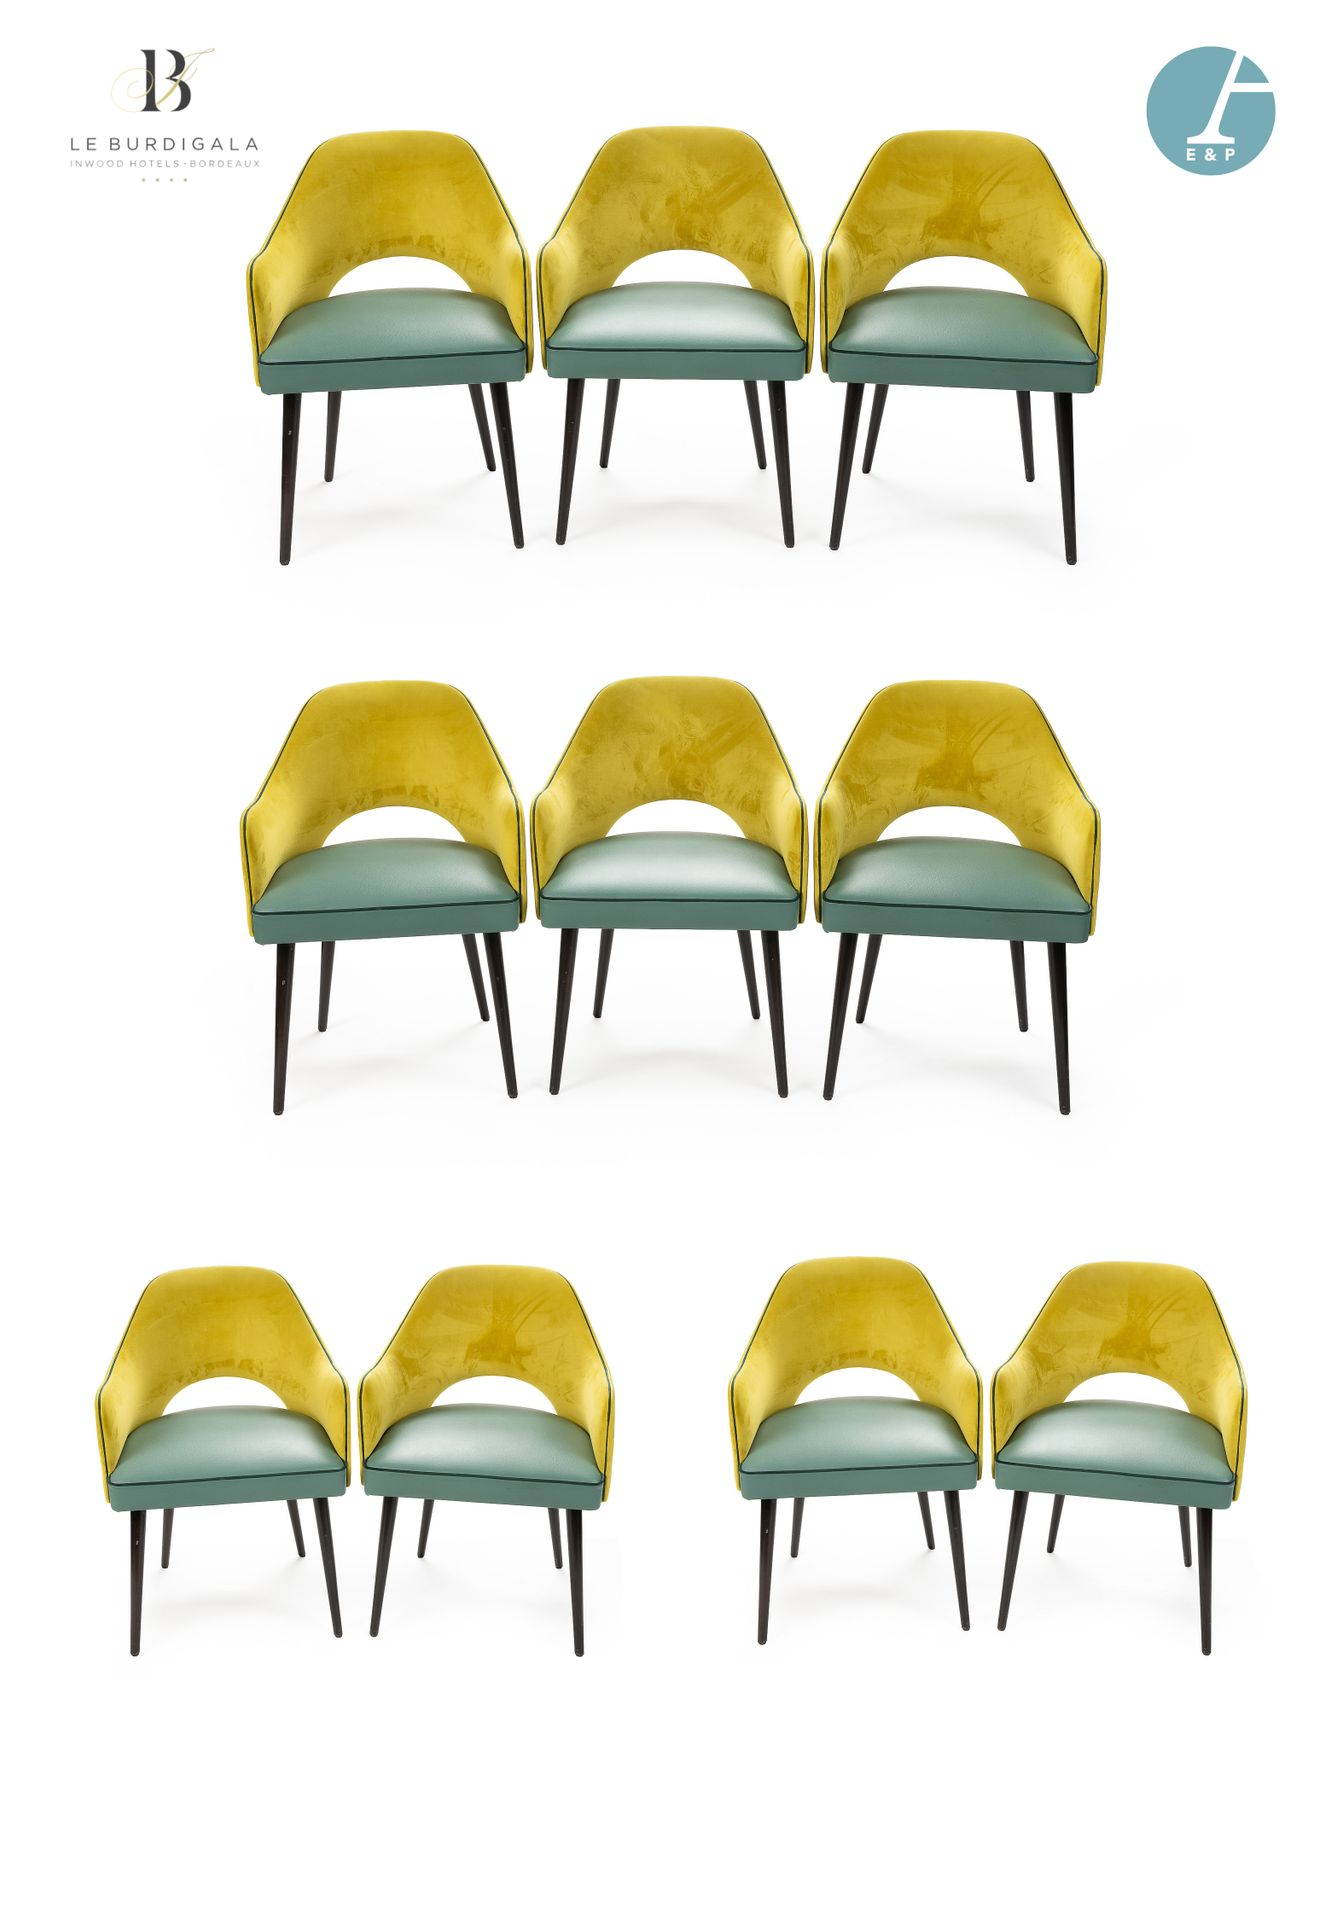 Null 
从波尔多的4*酒店Burdigala出发














一套10把扶手椅，天然木制锥形椅腿，绿色仿皮座椅，黄色天鹅绒贡多拉椅背。品牌C&hellip;